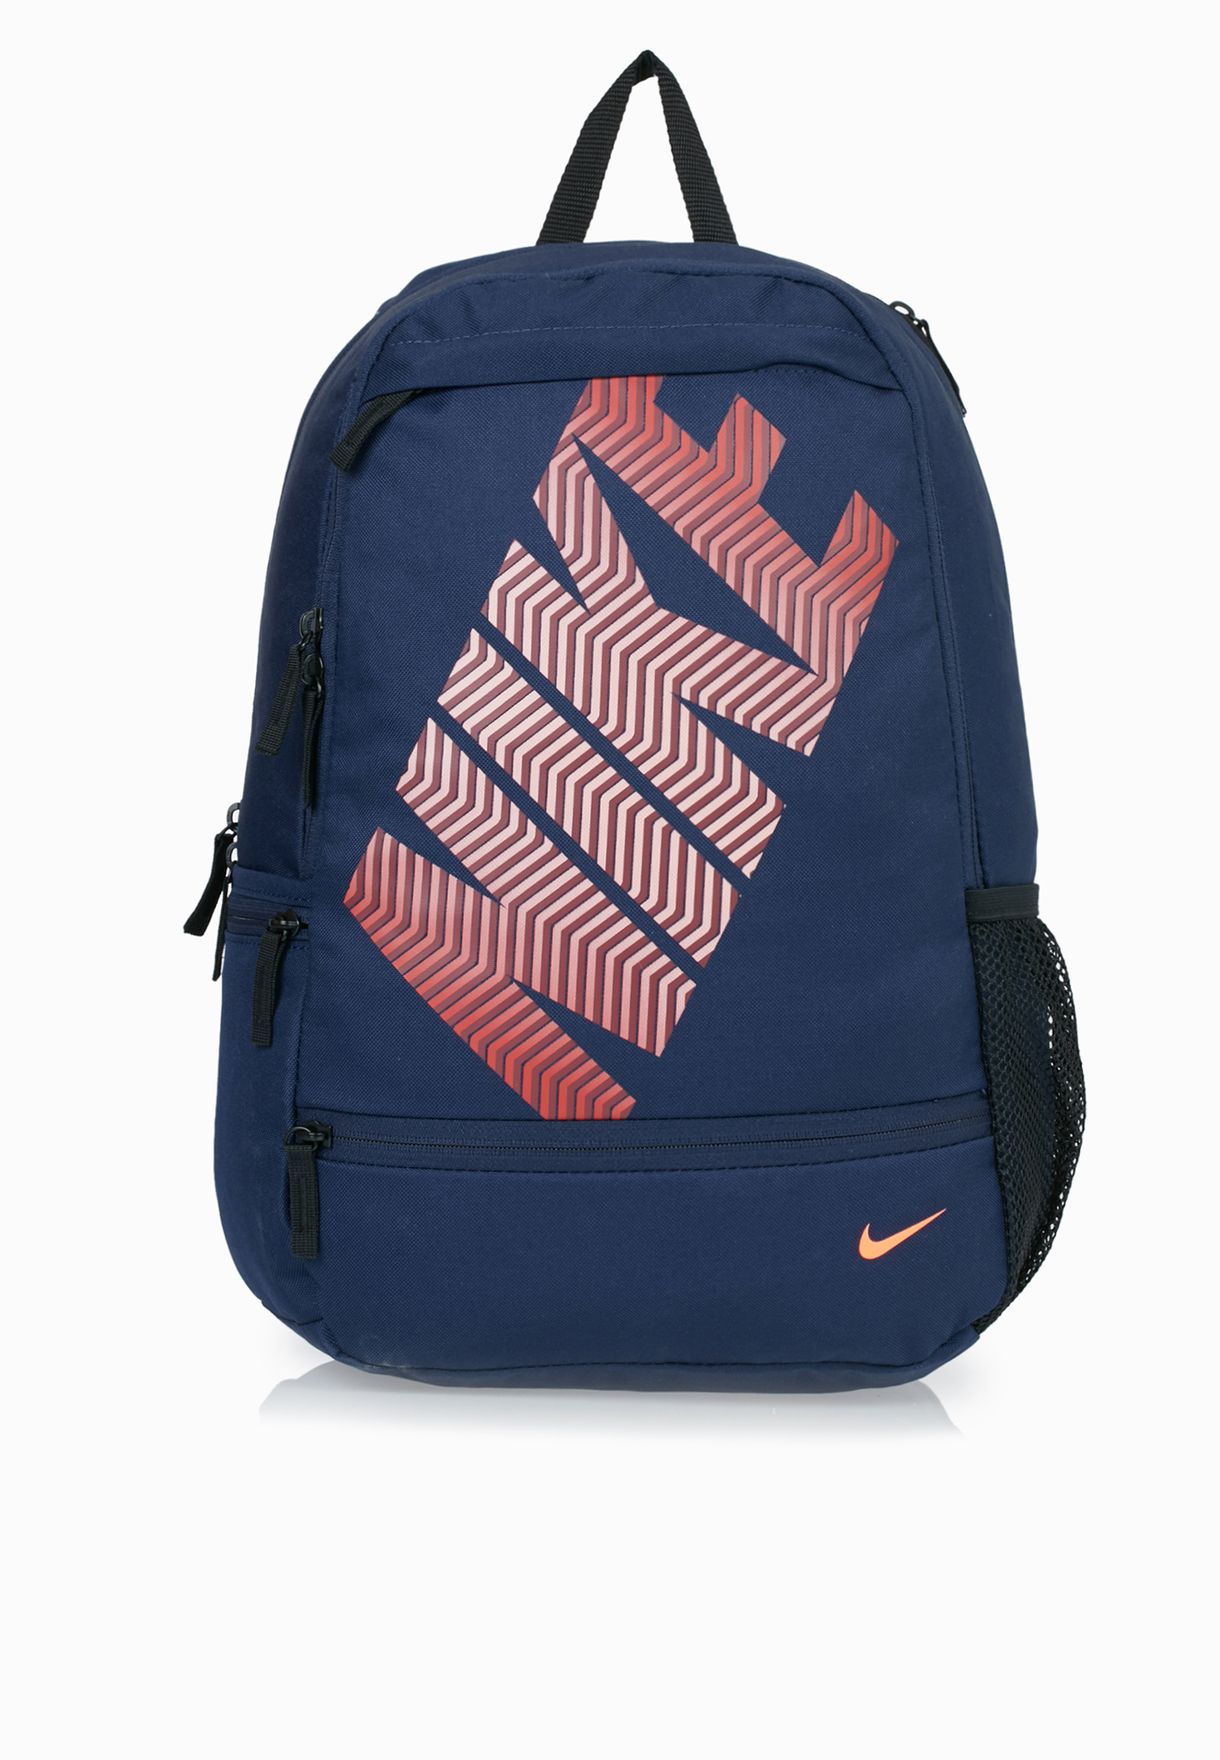 nike classic line backpack